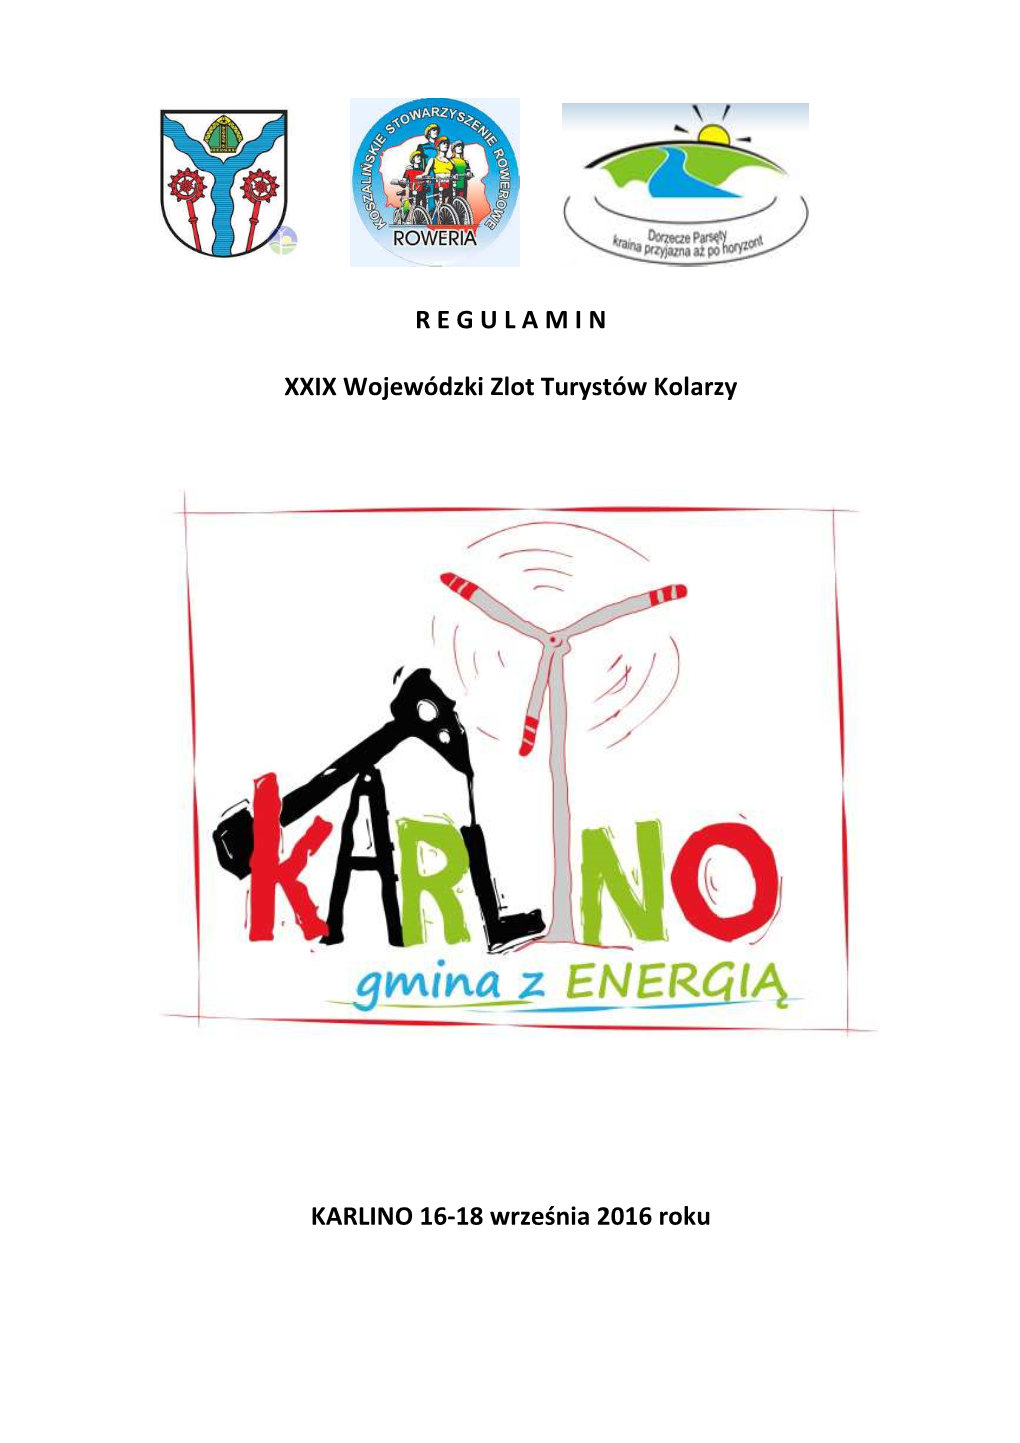 XXIX Zlot Turystów Kolarzy 16-18.09.2016 Karlino-V. 2